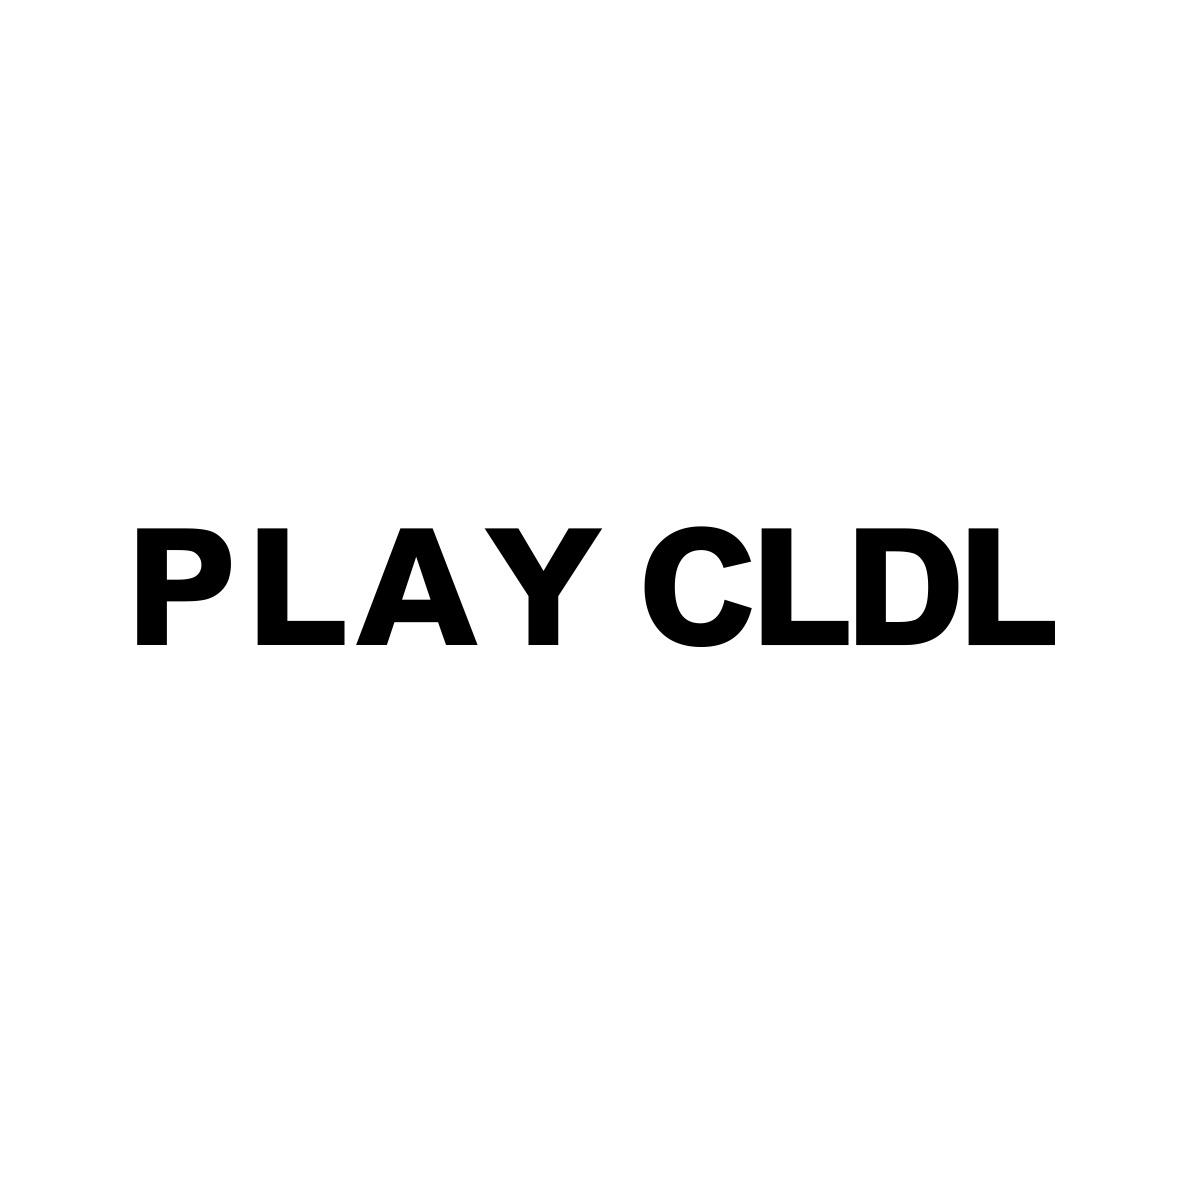 PLAY CLDL